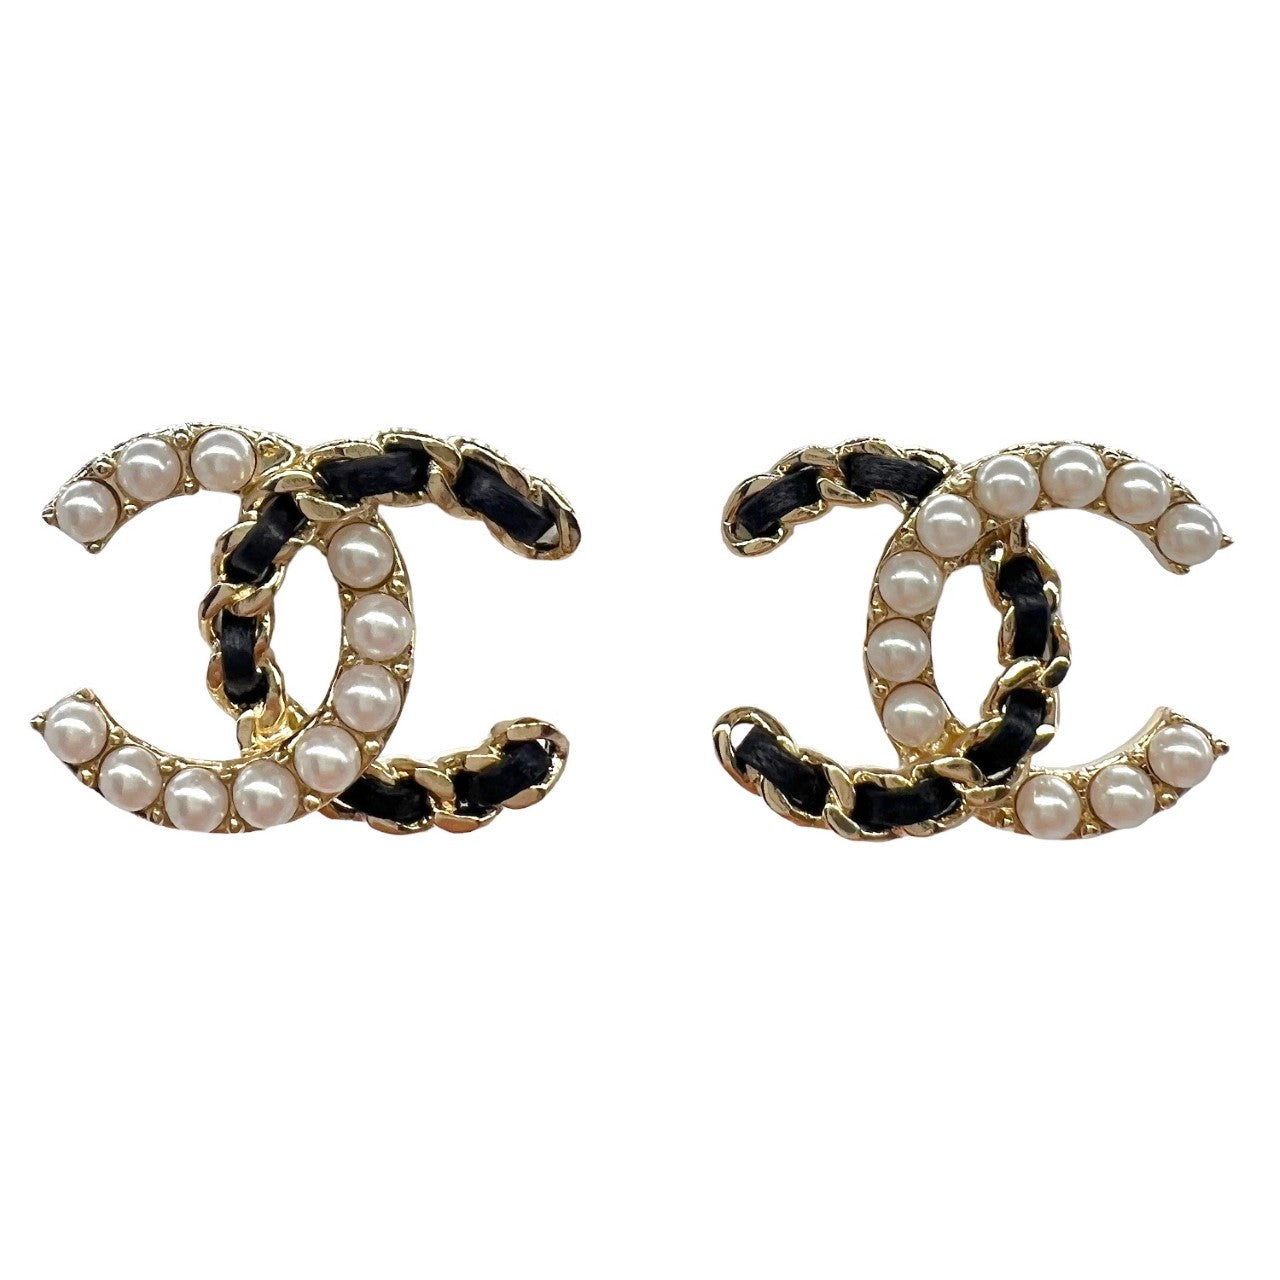 Chanel Vintage 90's Hoop Earrings with Pearl Drop - gold/black